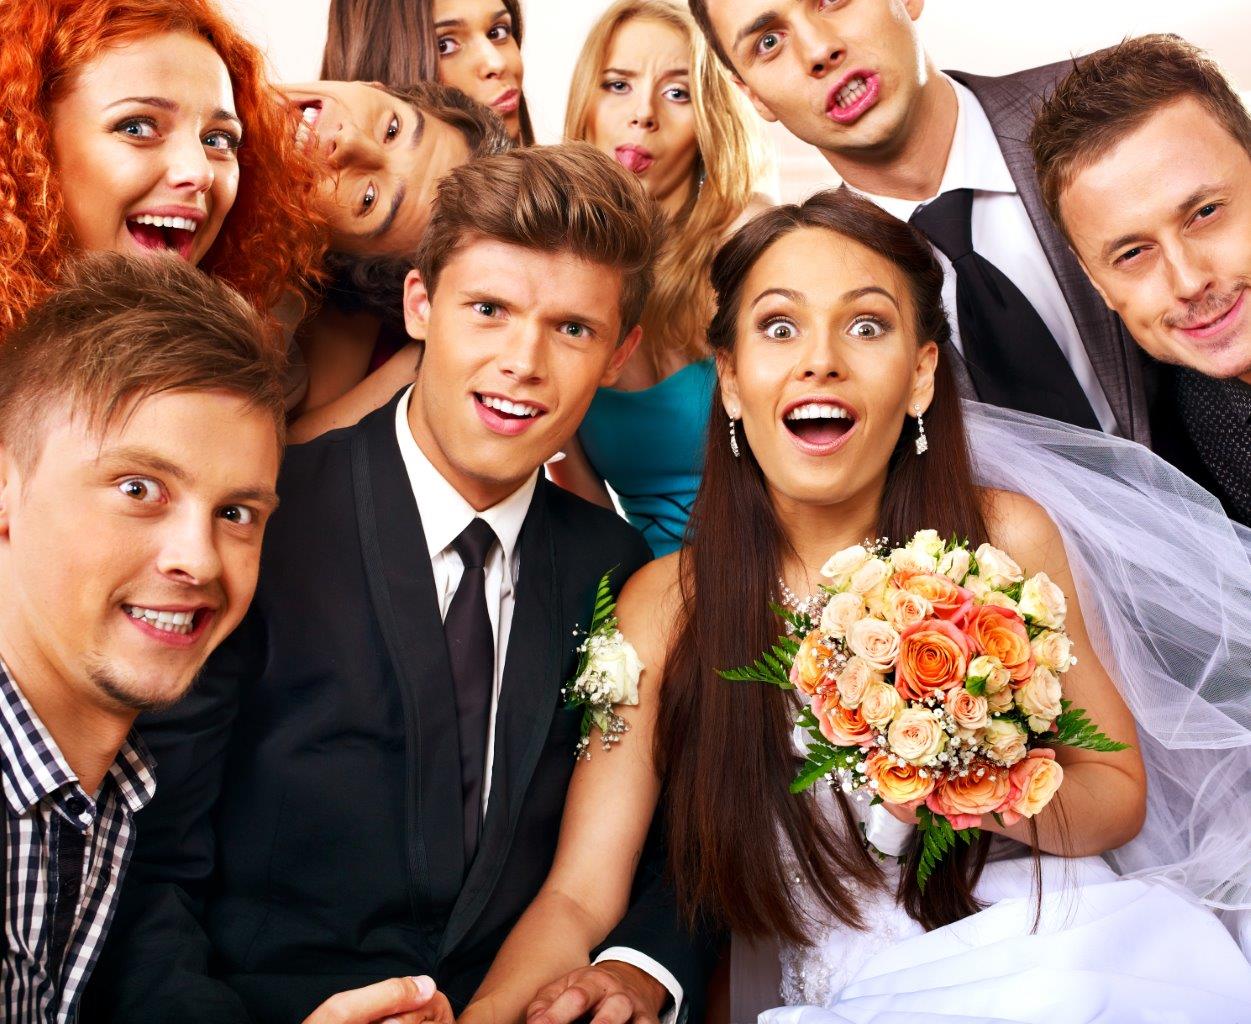 Fun wedding group photo